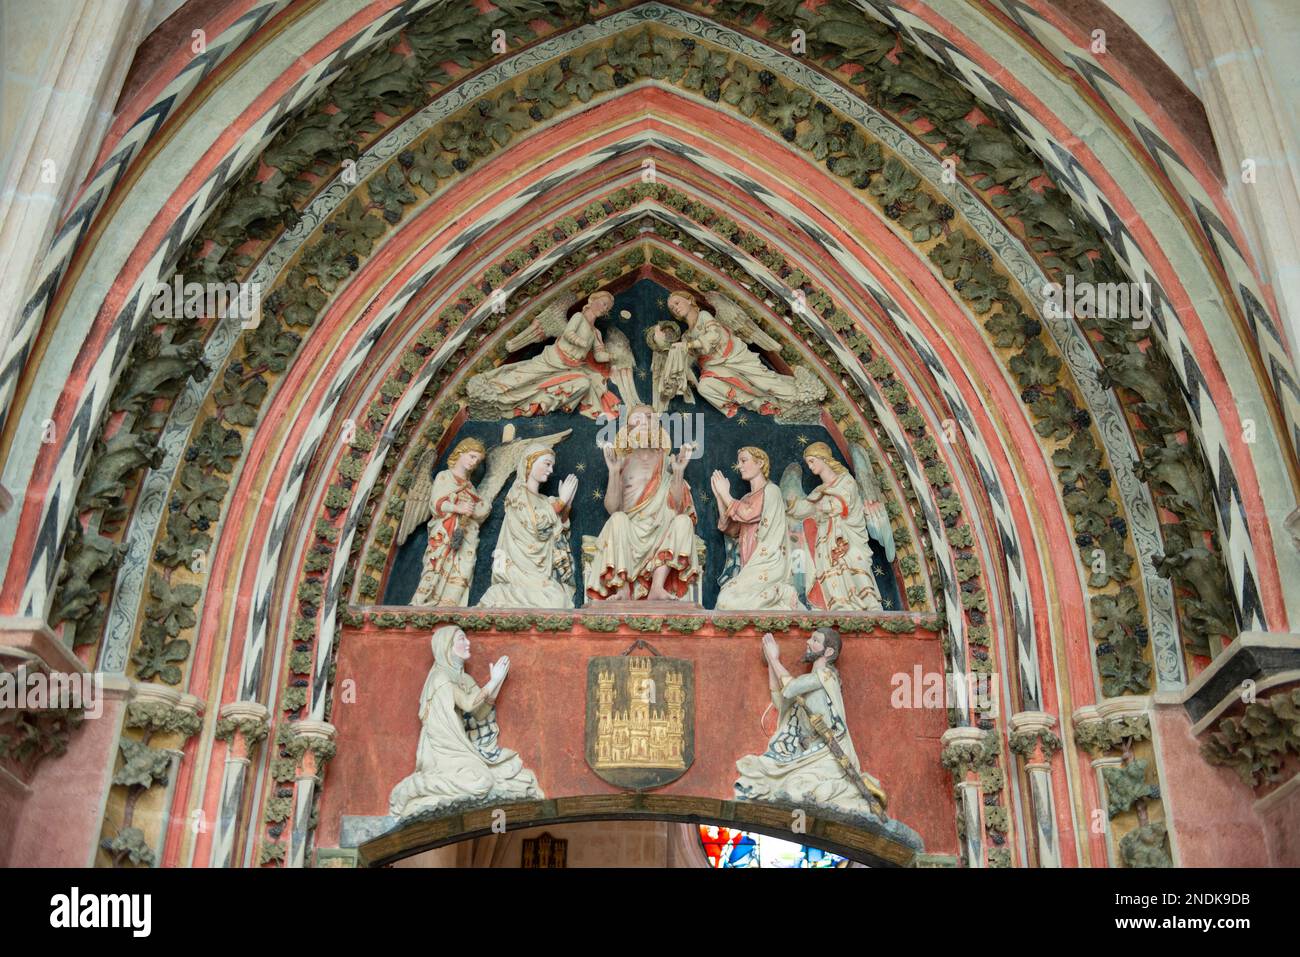 Tímpano de Jesucristo entronizado con María, santa y ángeles, claustros, Catedral de Santa María de Burgos (Patrimonio de la Humanidad por la UNESCO), Burgos, C Foto de stock